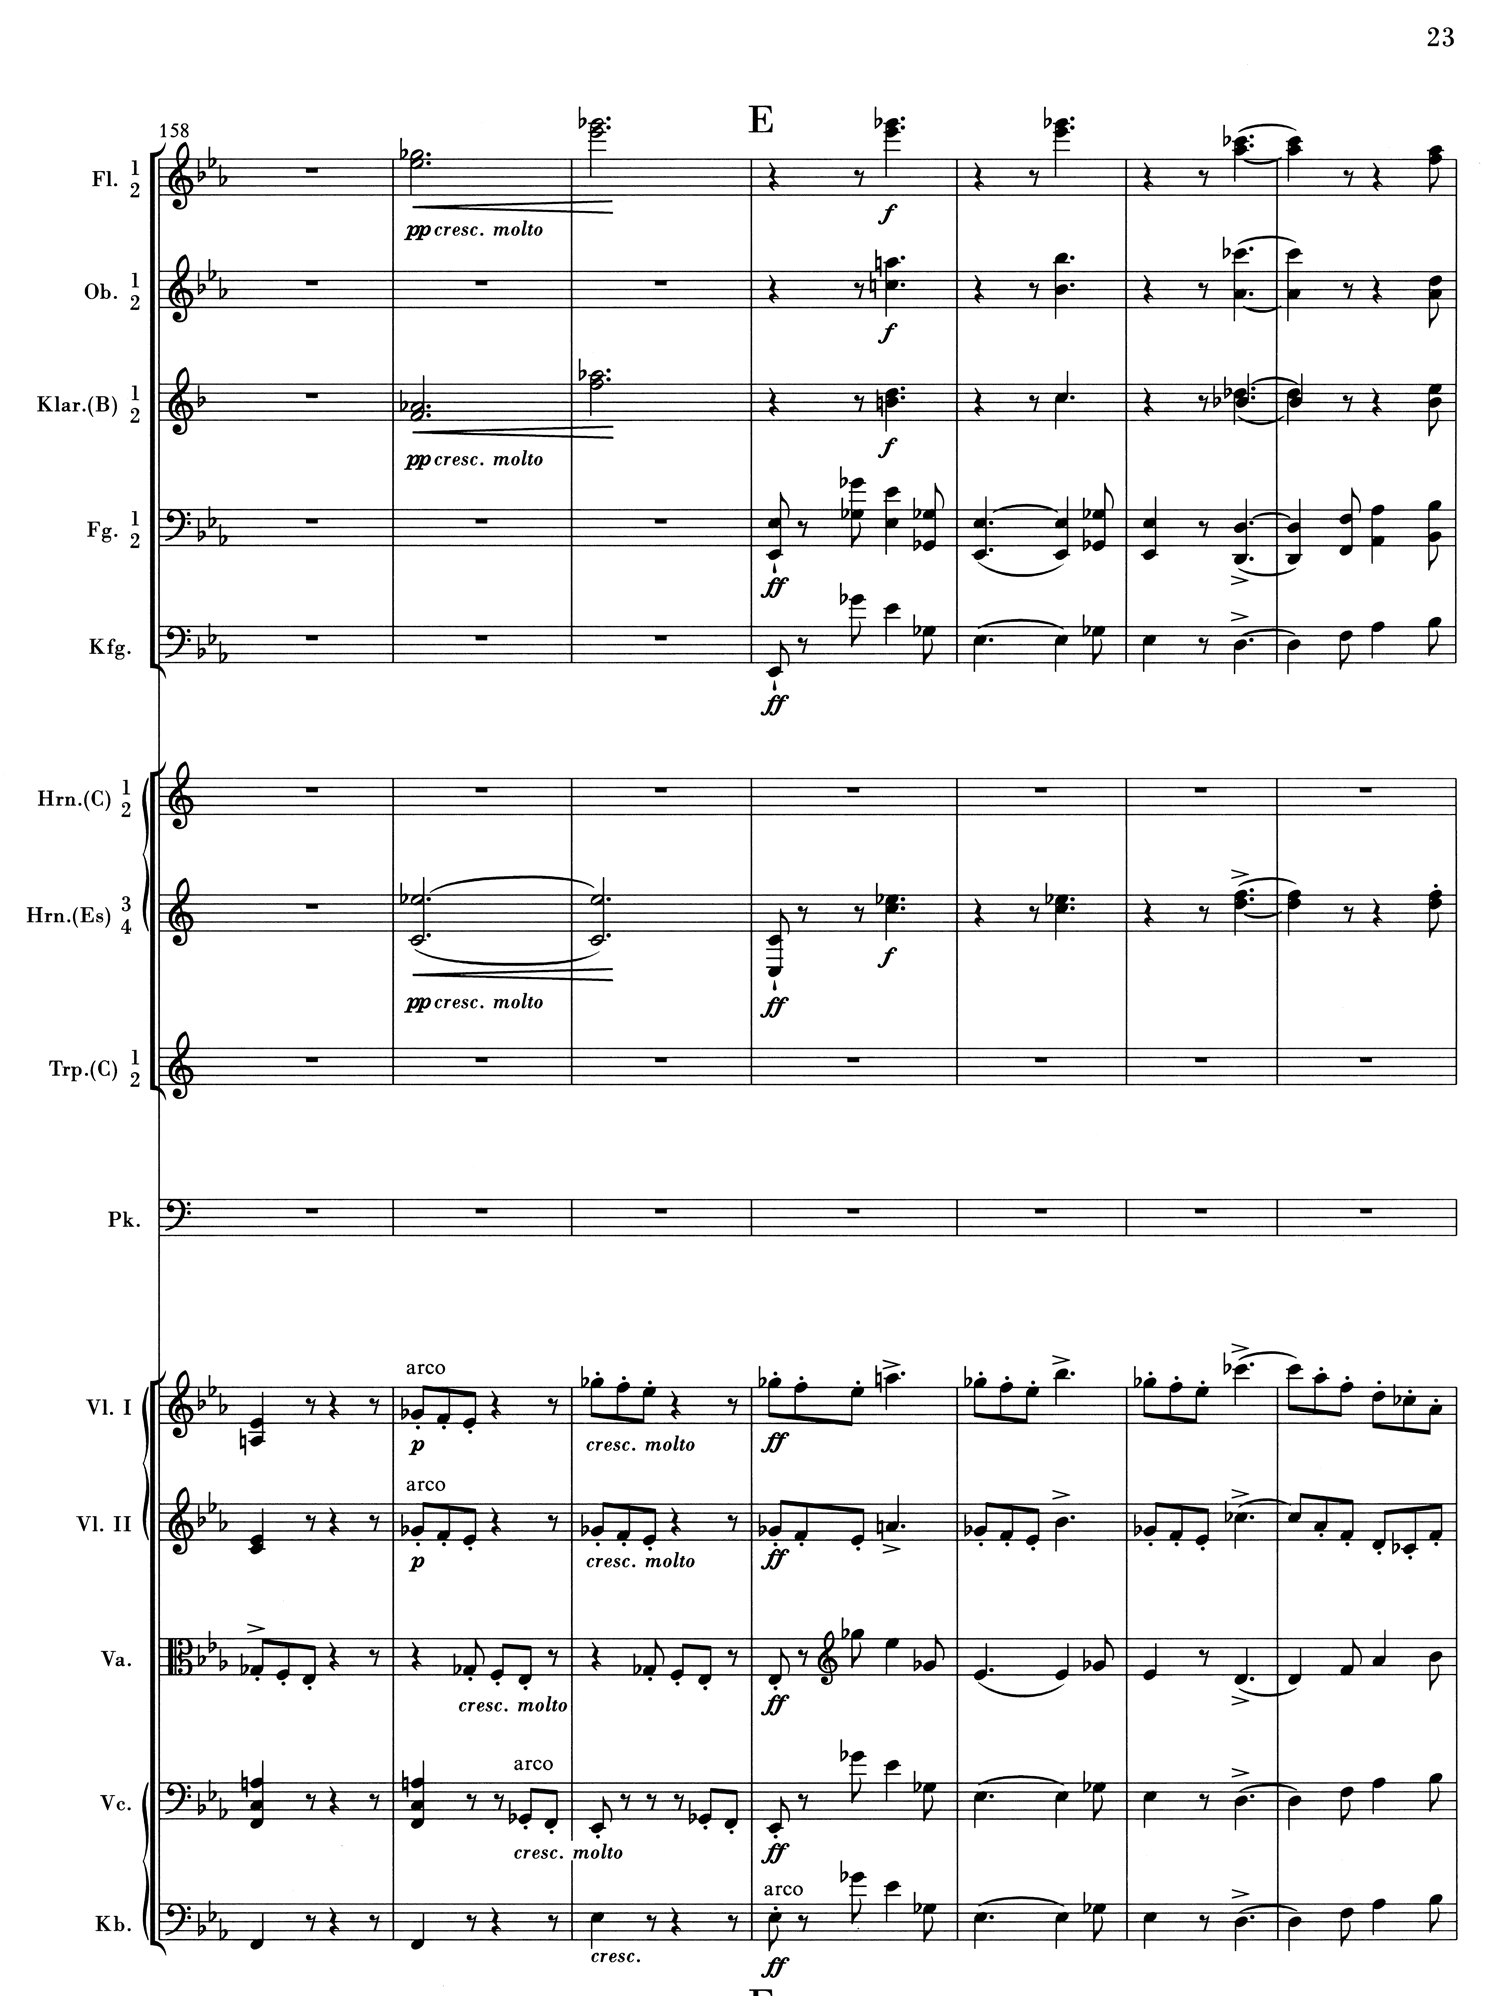 Brahms 1 Mvt 1 Score 1.jpg